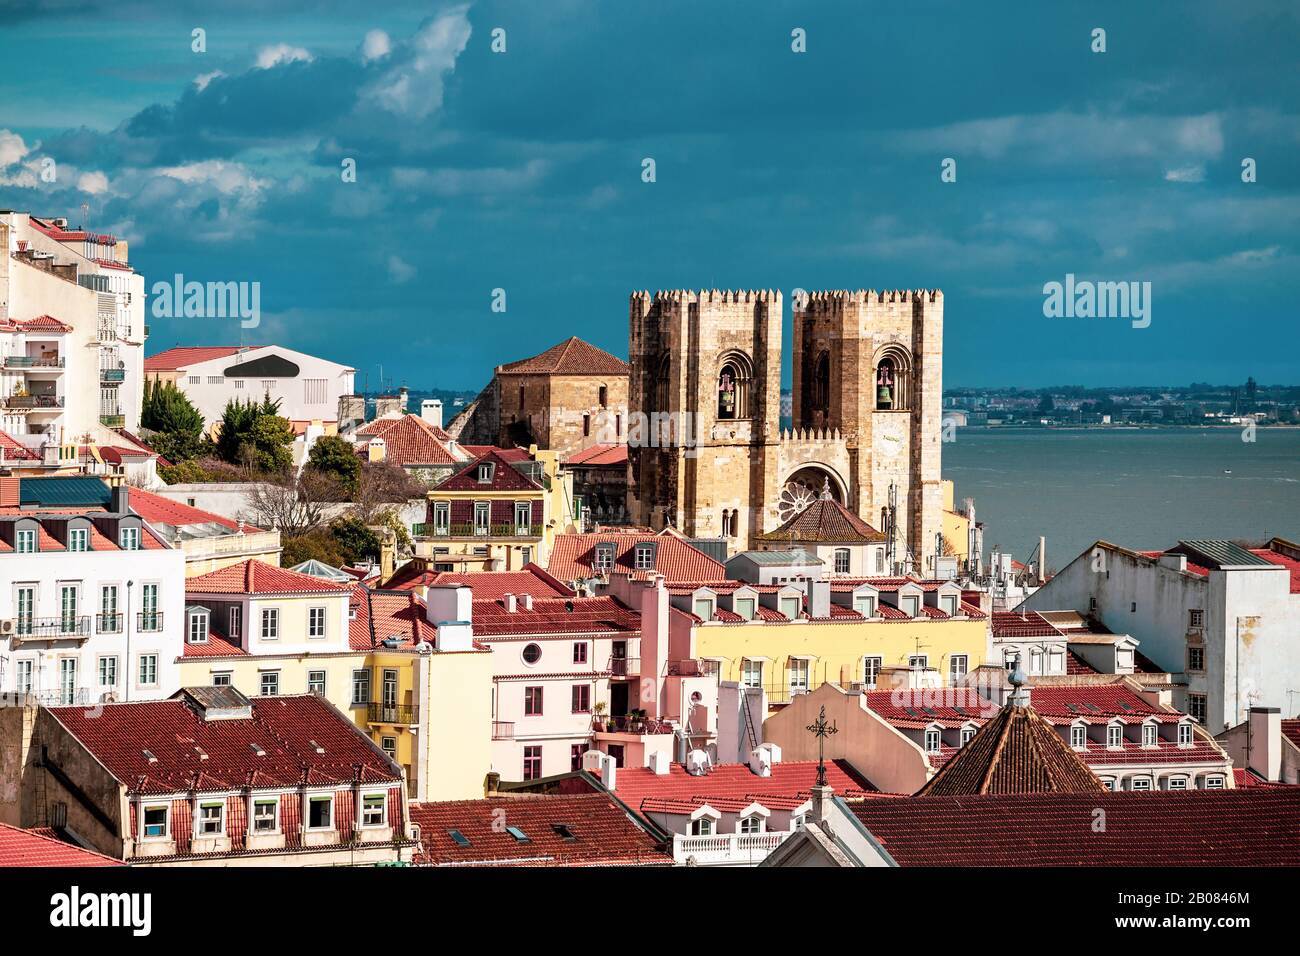 Vue panoramique aérienne sur la cathédrale historique médiévale et ses environs dans la capitale portugaise de Lisbonne Banque D'Images